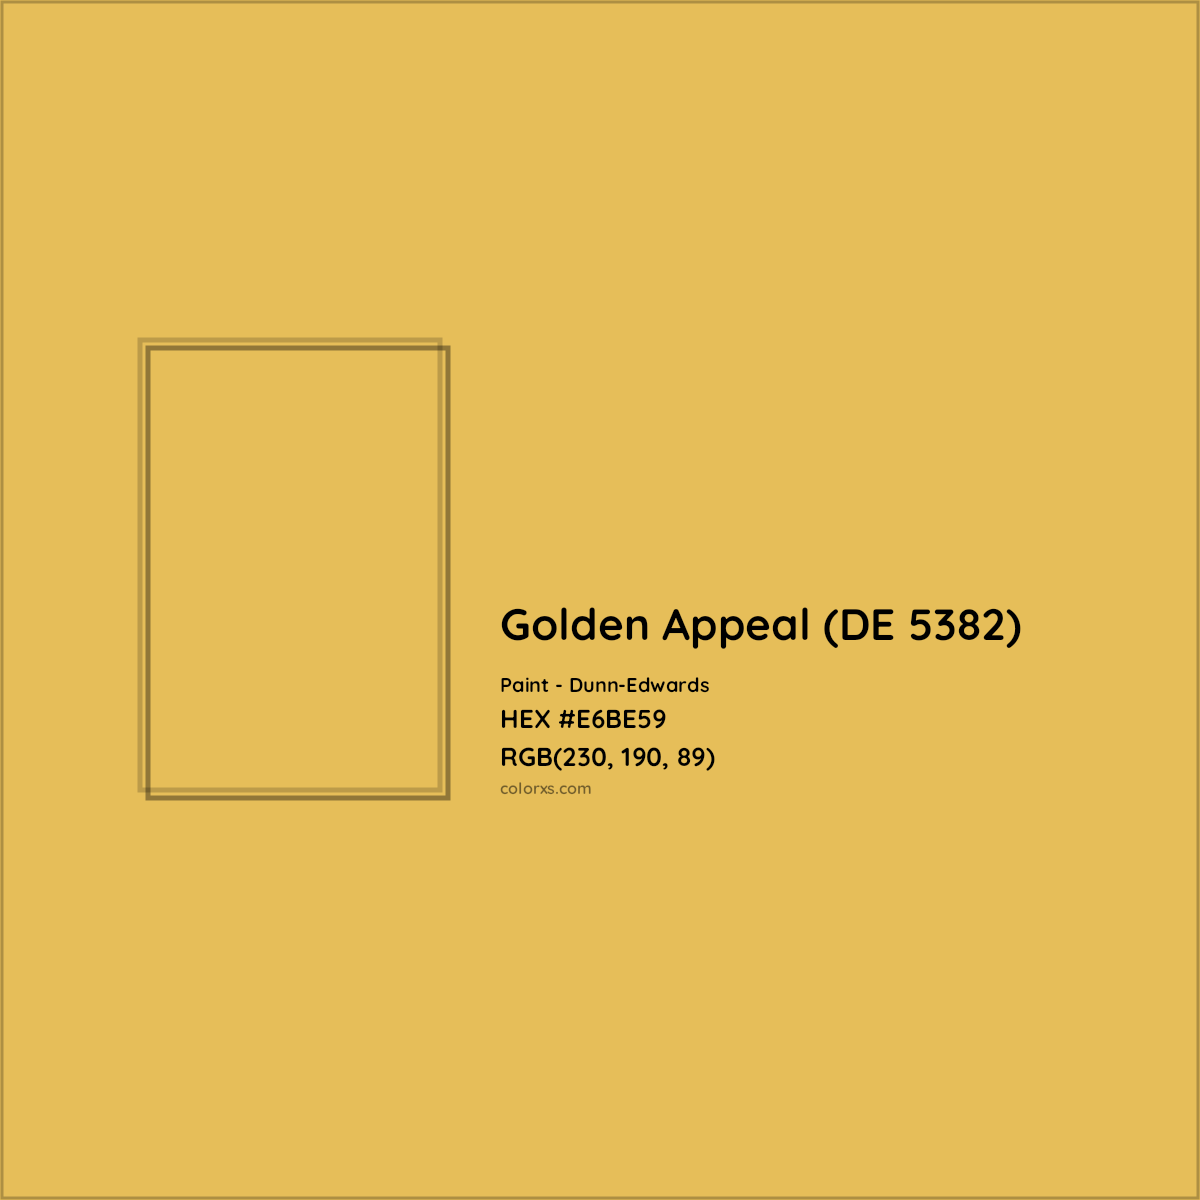 HEX #E6BE59 Golden Appeal (DE 5382) Paint Dunn-Edwards - Color Code